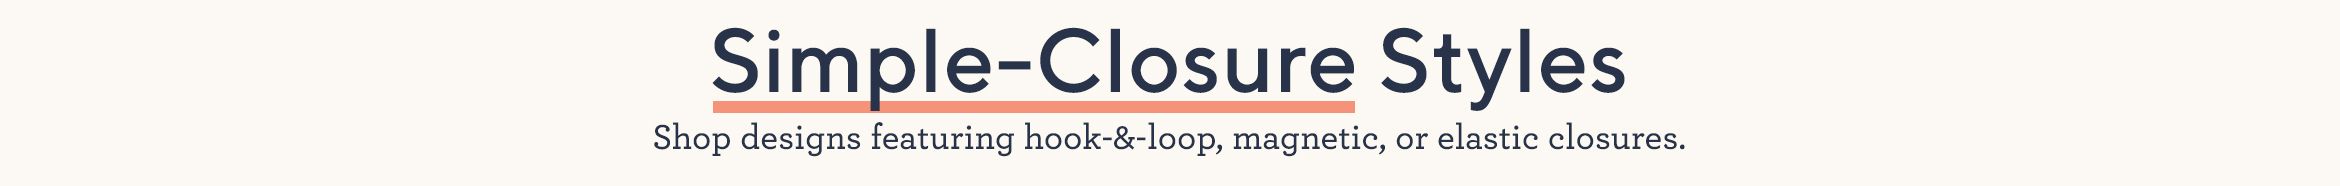 Simple-Closure Styles.  Shop designs featuring hook-&-loop, magnetic, or elastic closures.